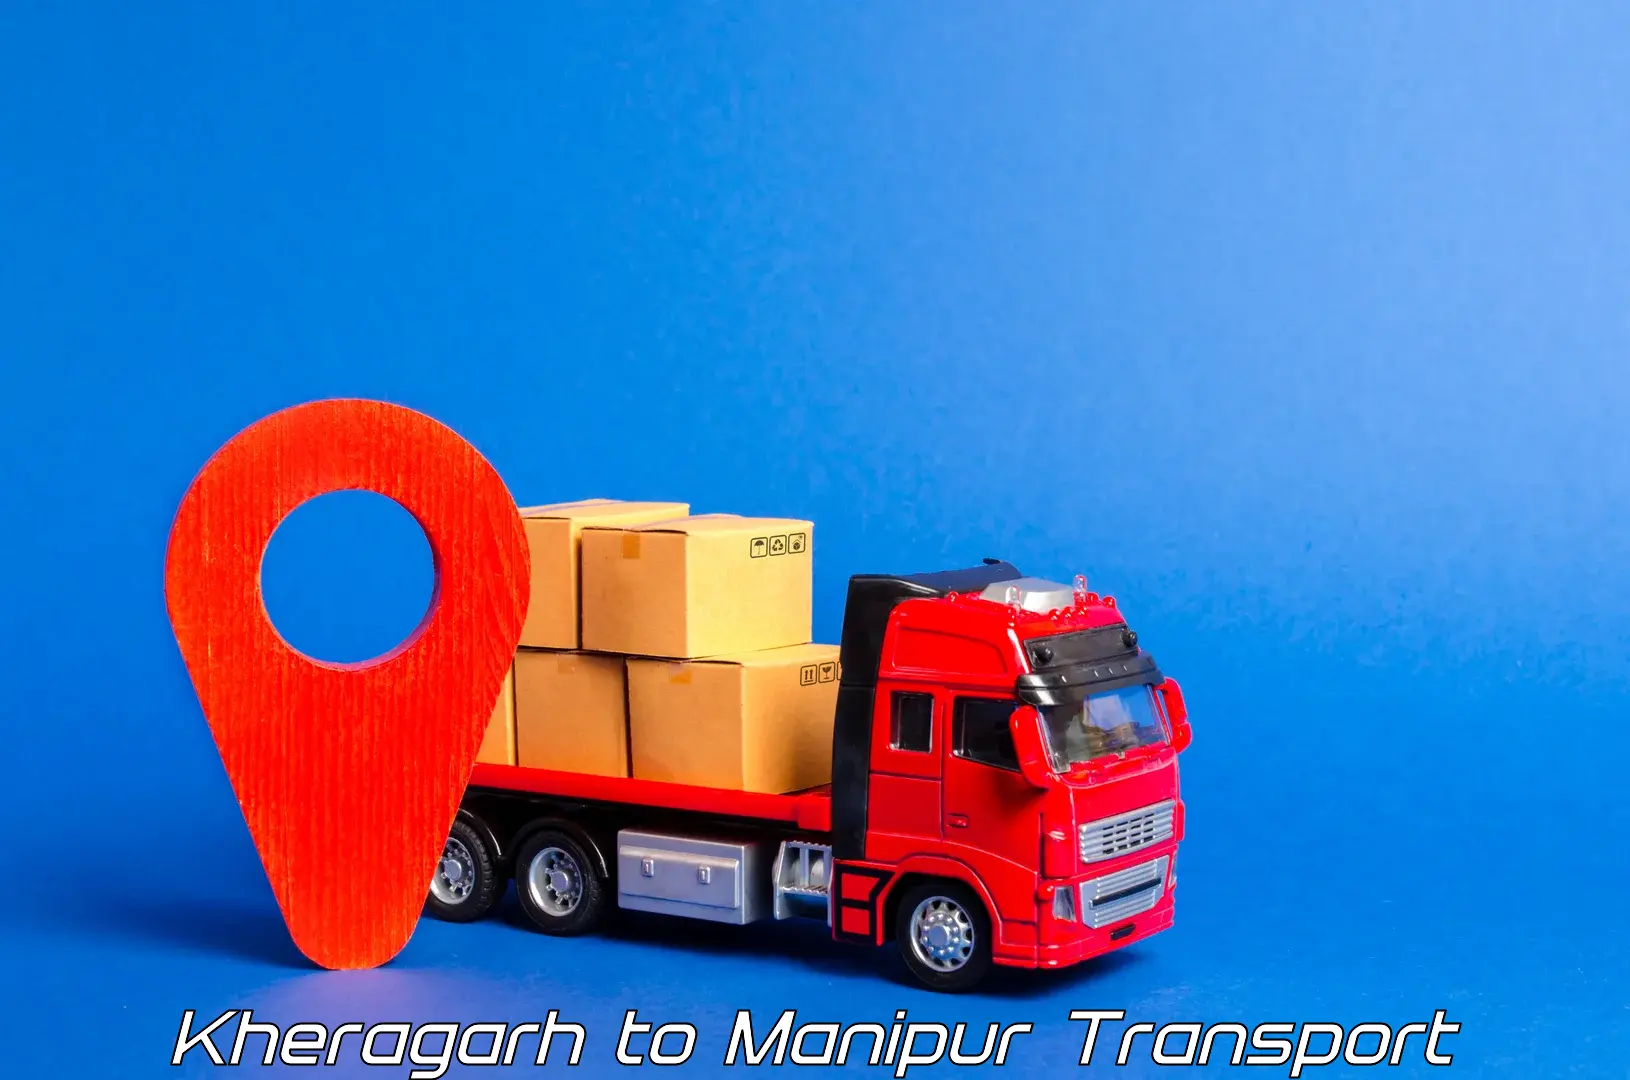 Goods transport services Kheragarh to Churachandpur